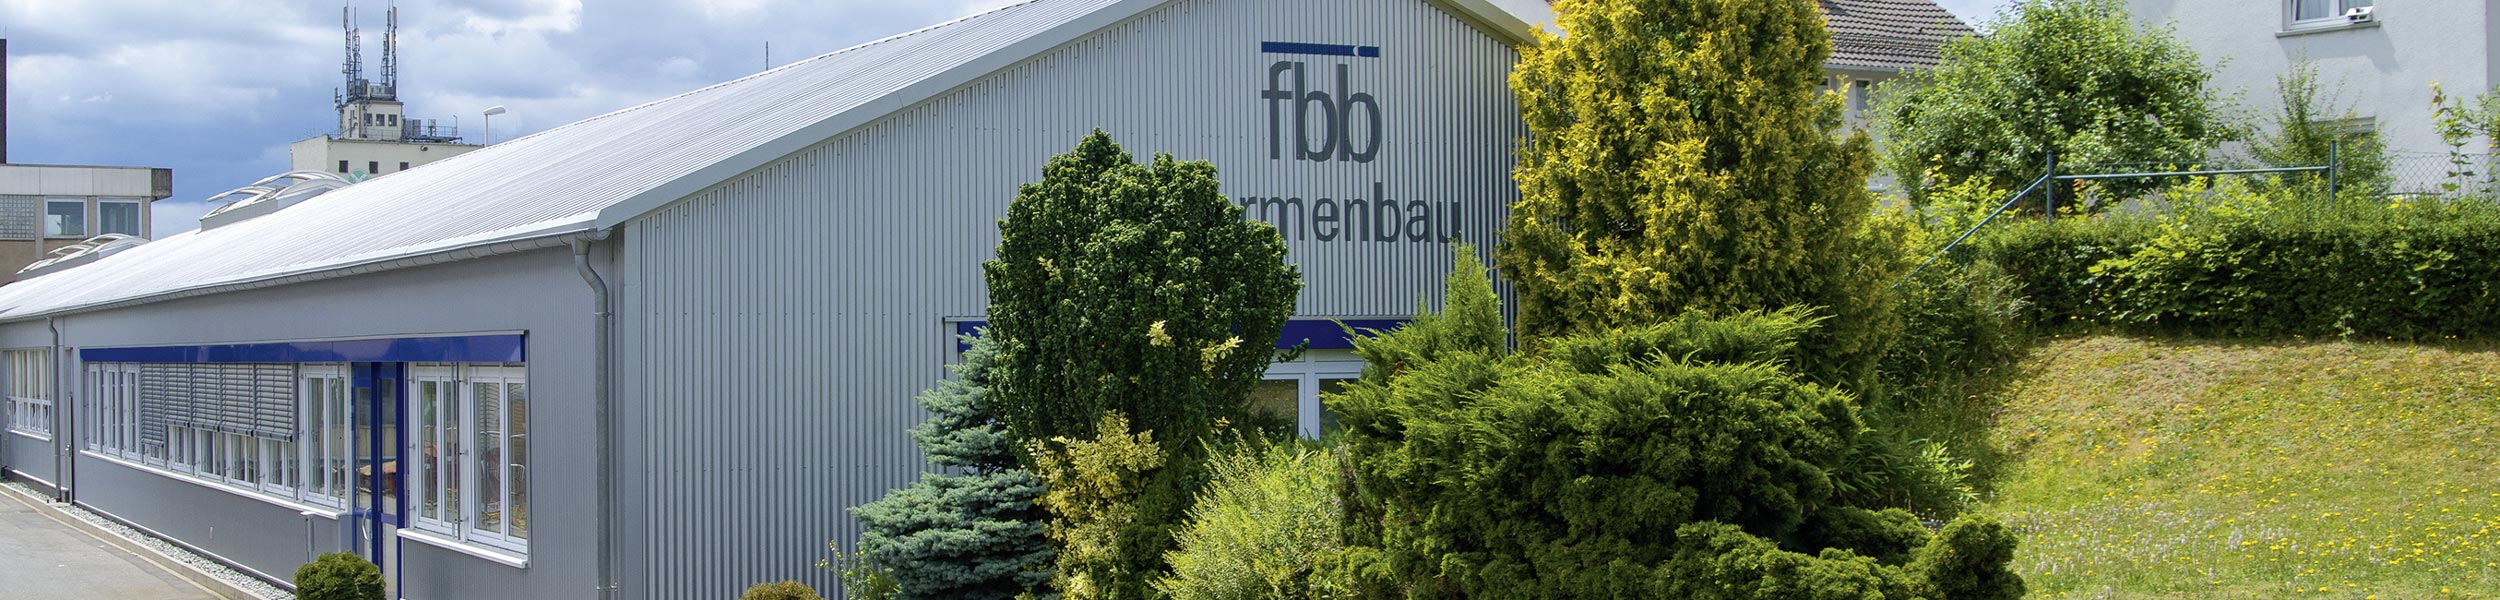 Über uns - FBB Formenbau Buchen GmbH